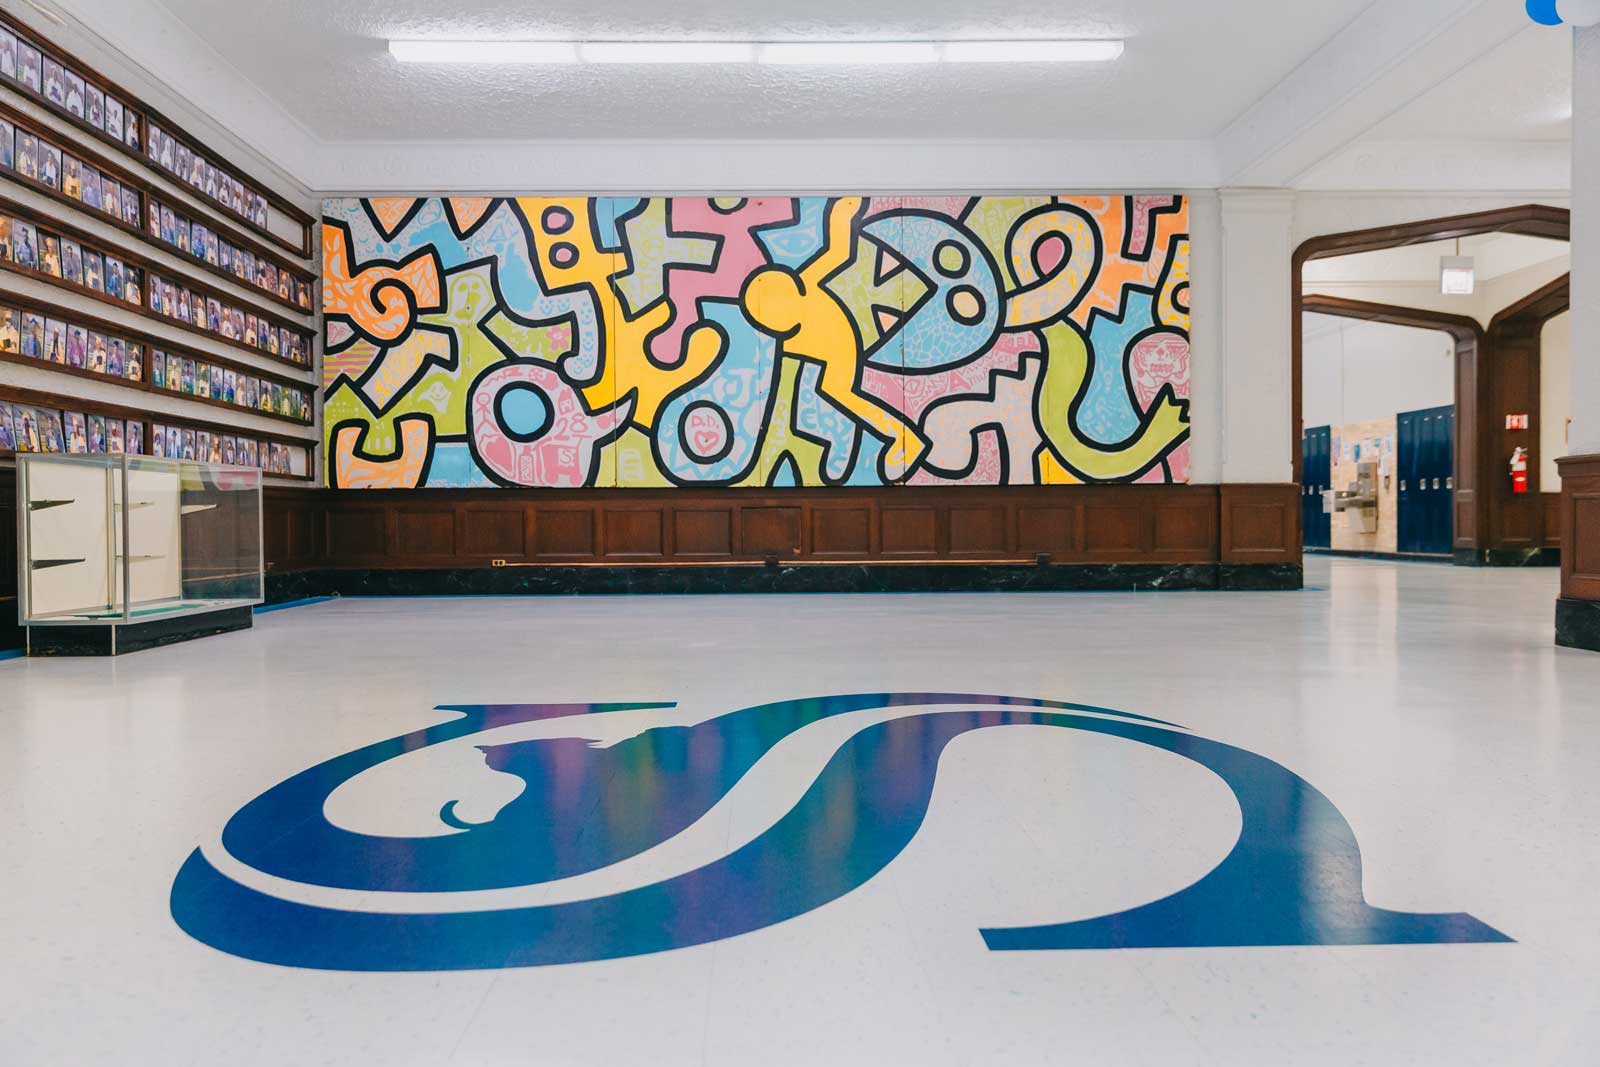 blue sullivan logo on ground with art in background